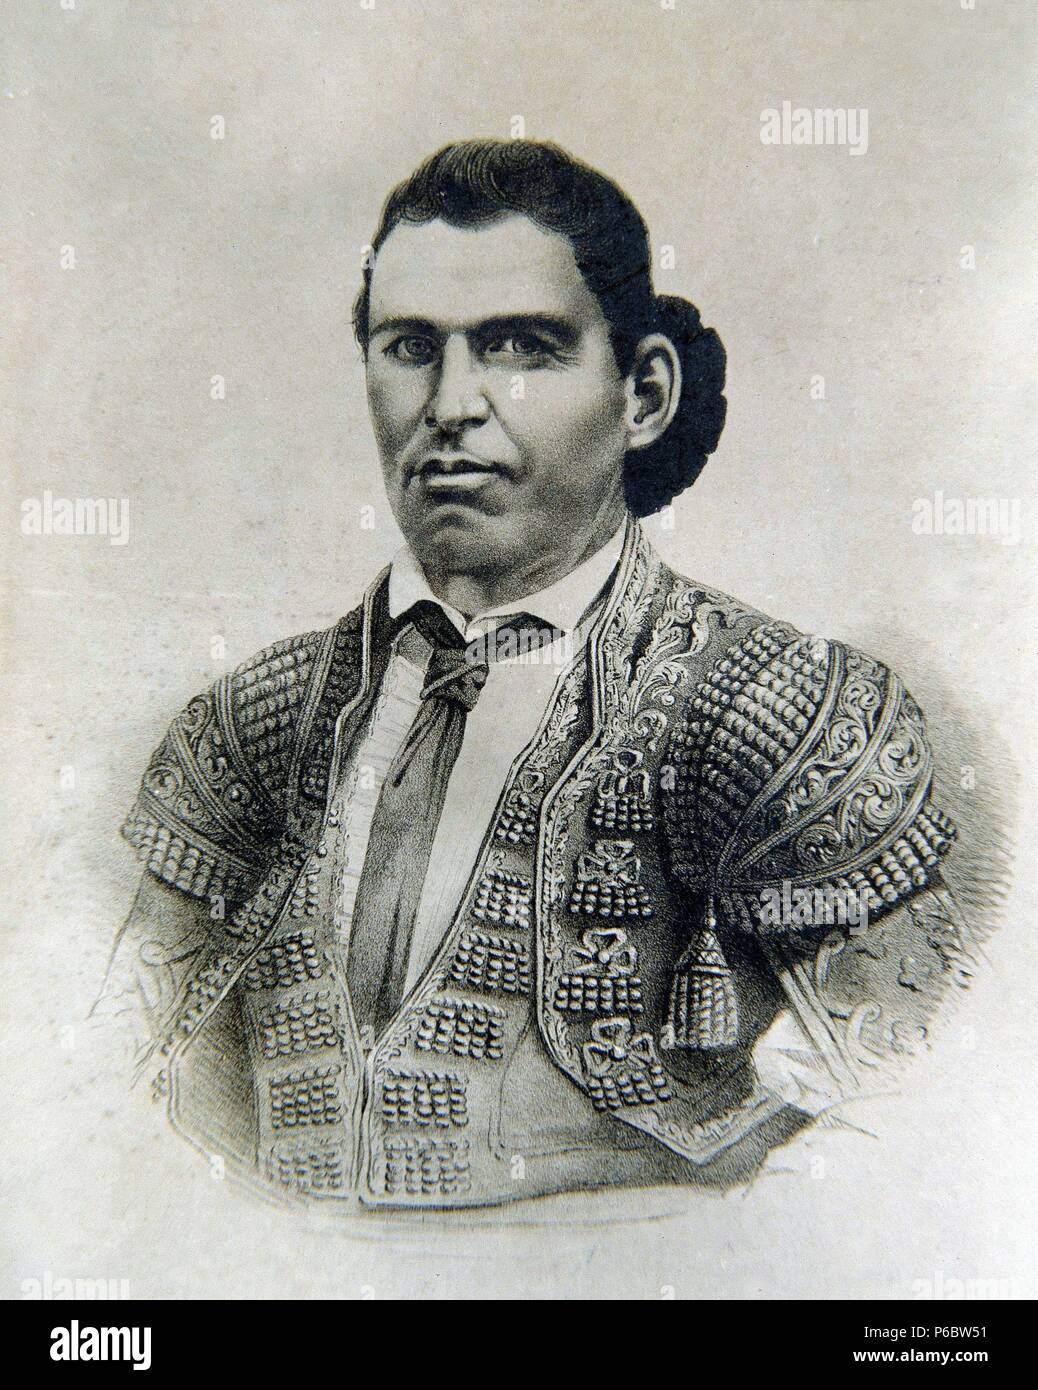 CHICLANERO , EL. JOSE REDONDO. MATADOR DE TOROS ESPAÑOL. CHICLANA 1819 - 1853. GRABADO RETRATO. Stock Photo